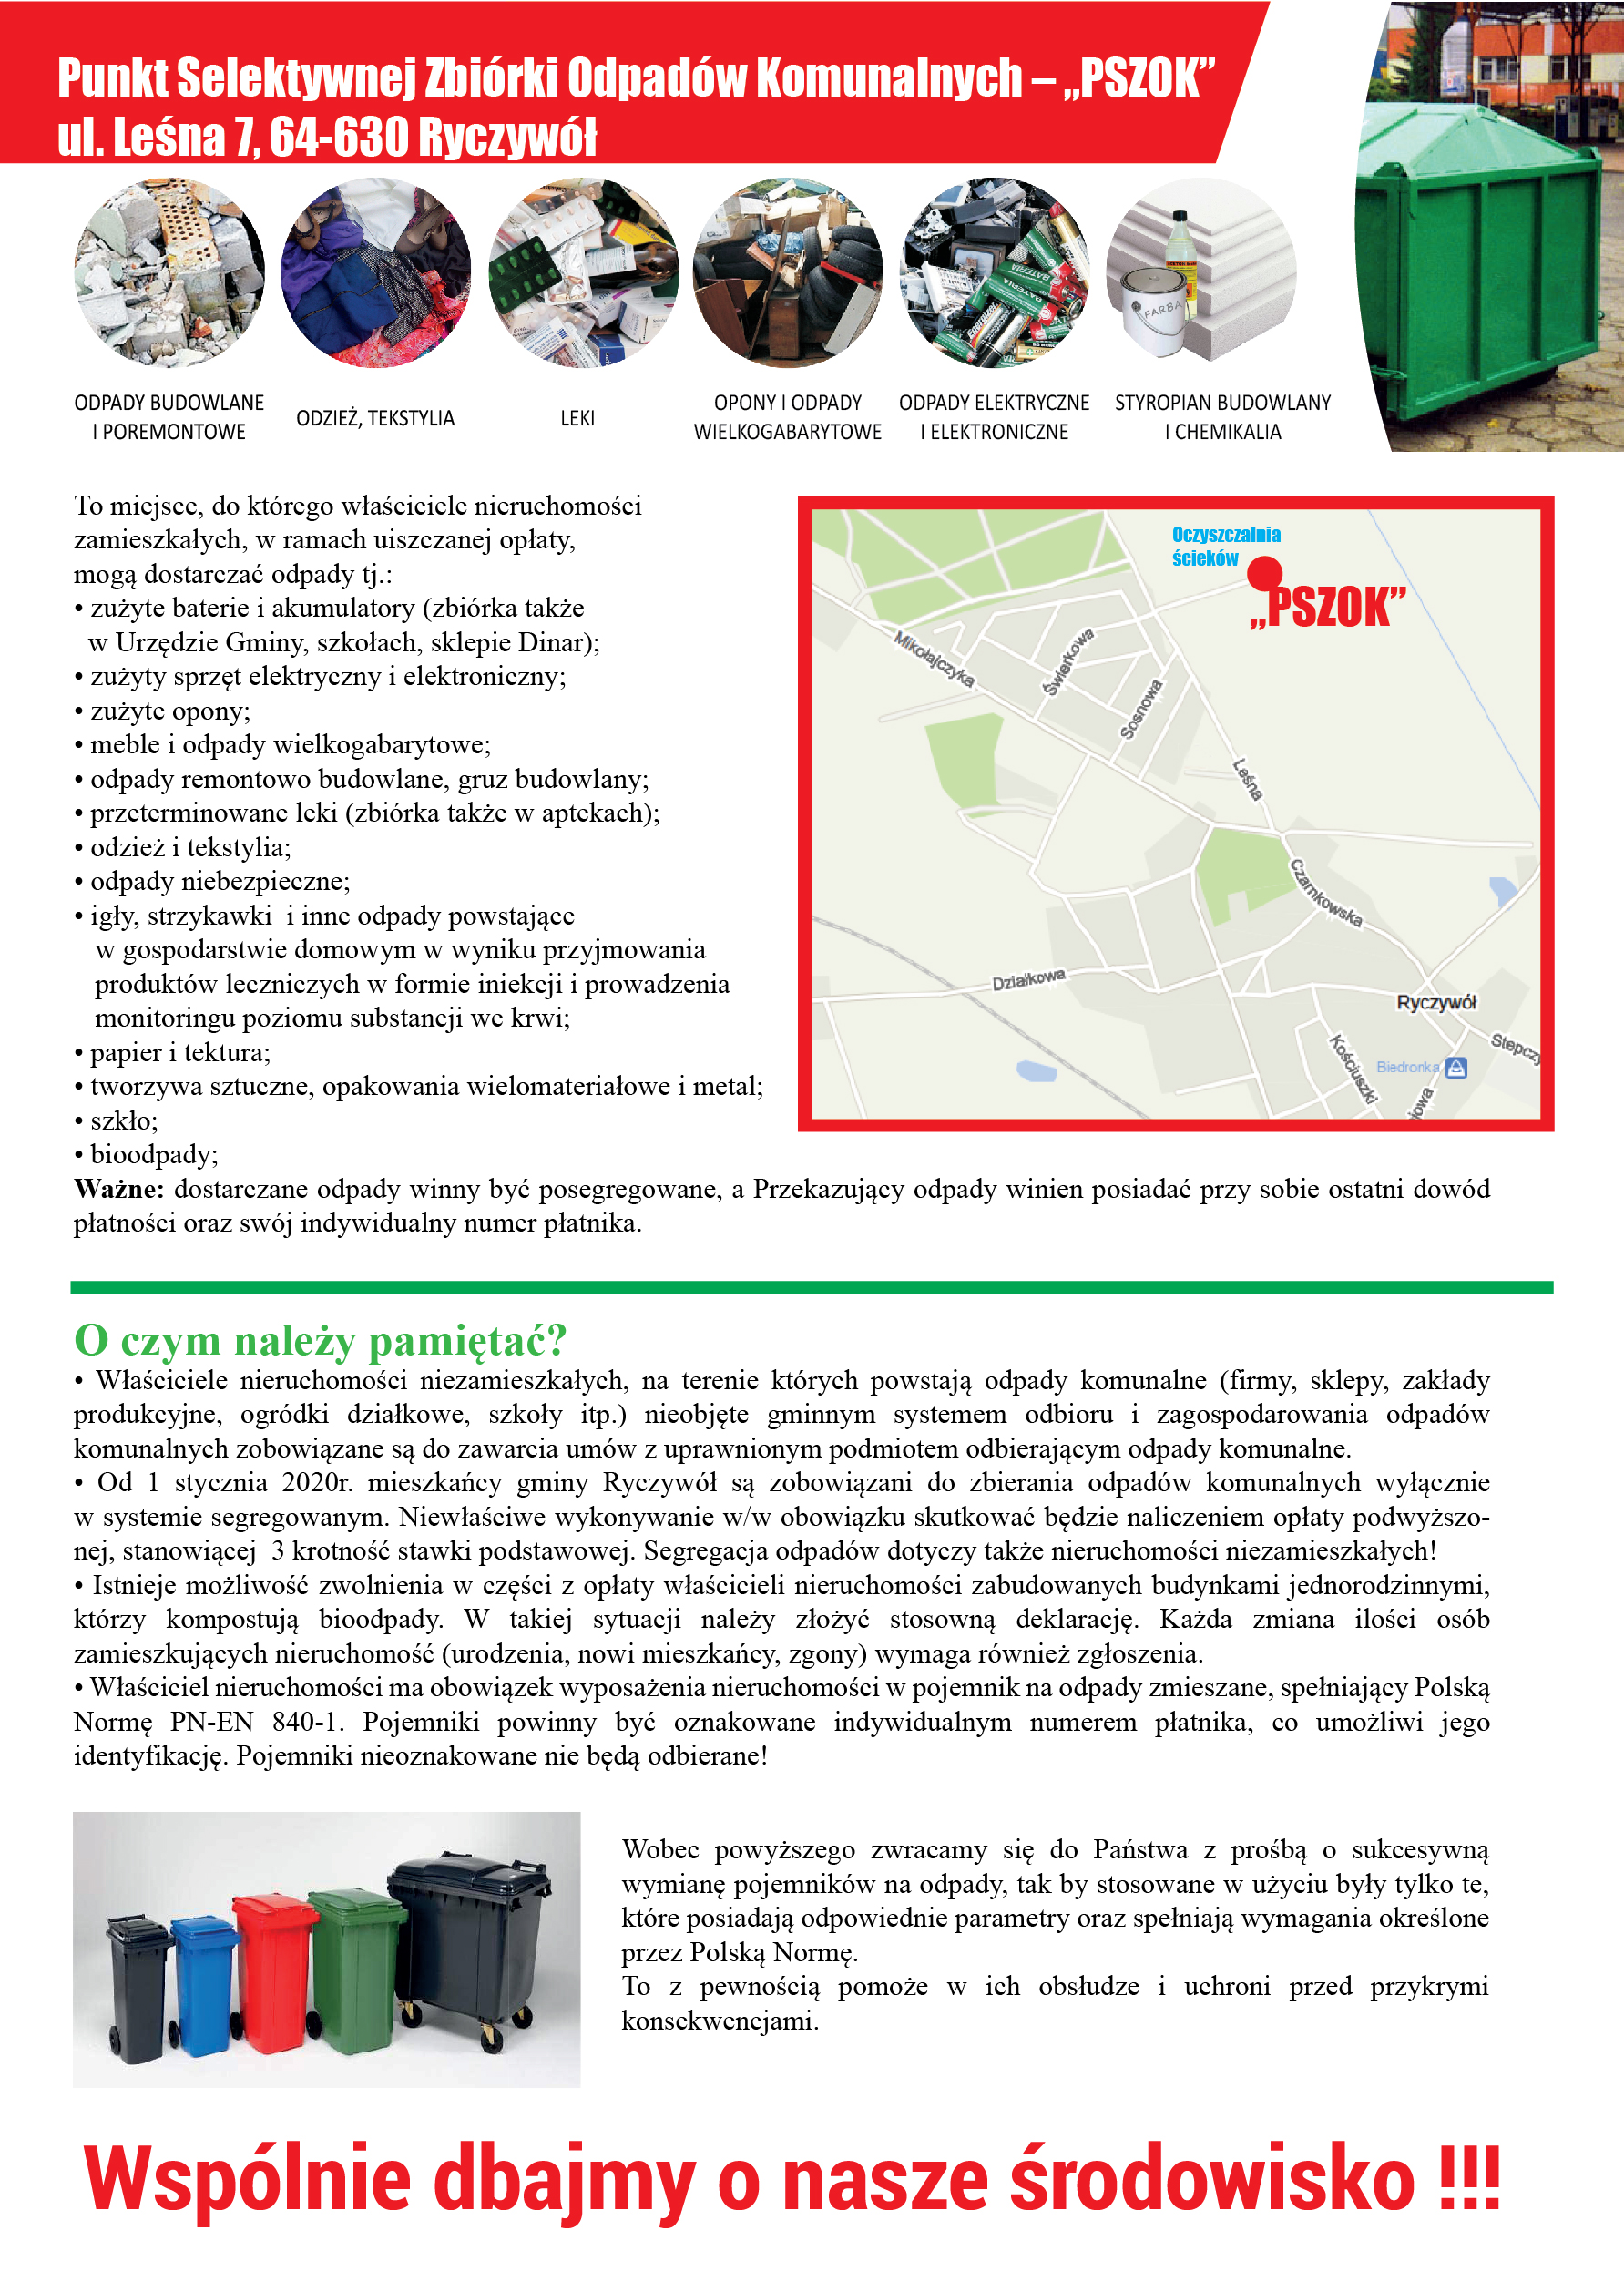 Plakat przedstawia informacje dotyczącego Punktu Selektywnej Zbiórki Odpadów Komunalnych w Ryczywole